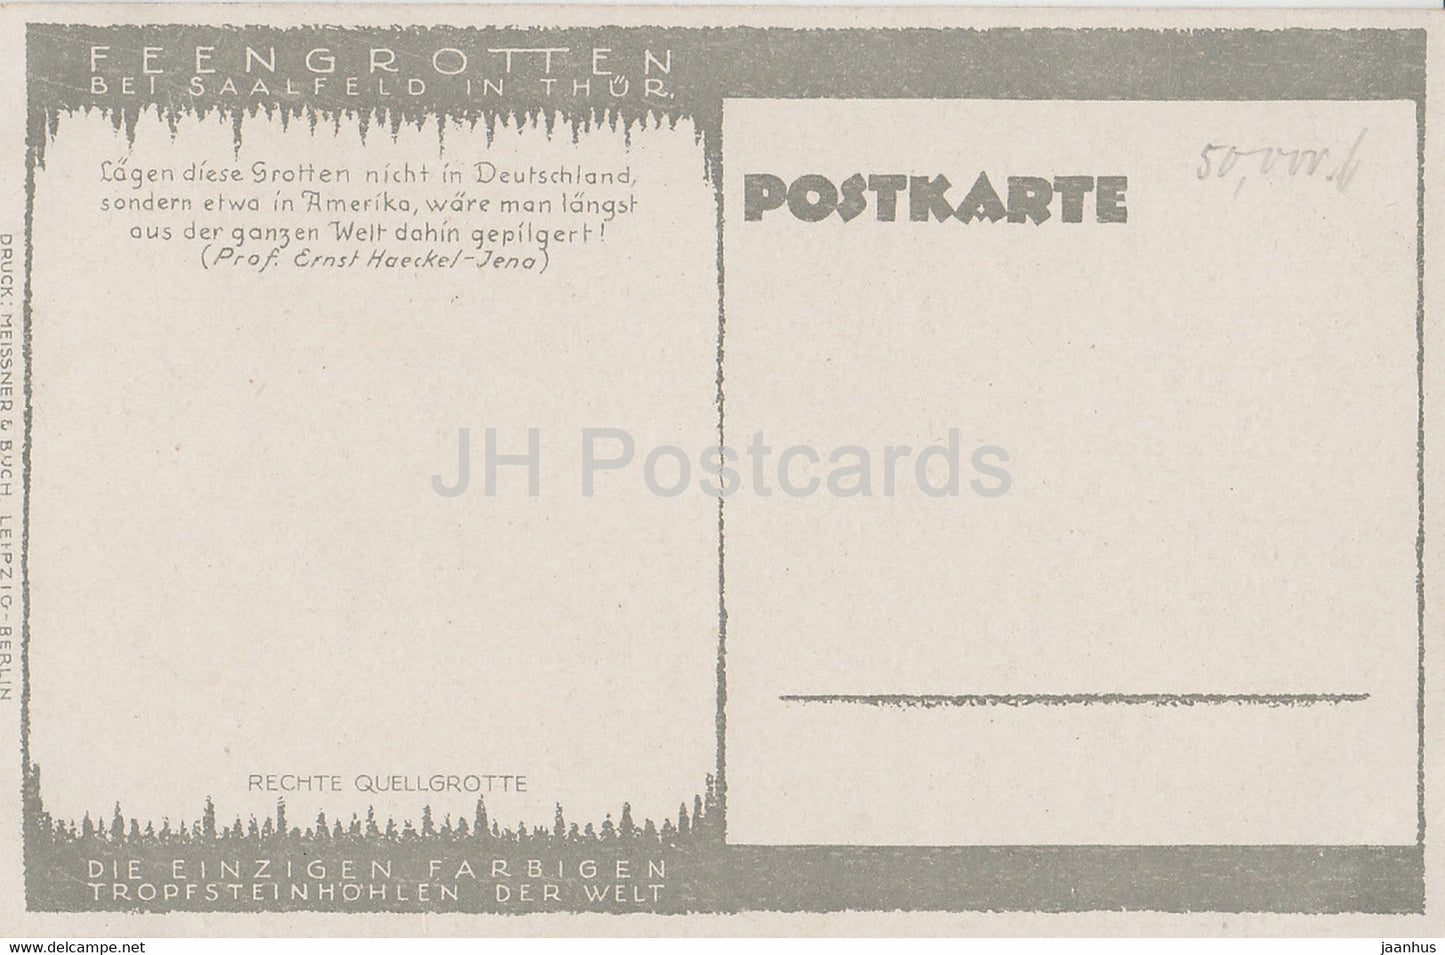 Feengrotten bei Saalfeld in Thur - Rechte Quellgrotte - Höhle - alte Postkarte - Deutschland - unbenutzt